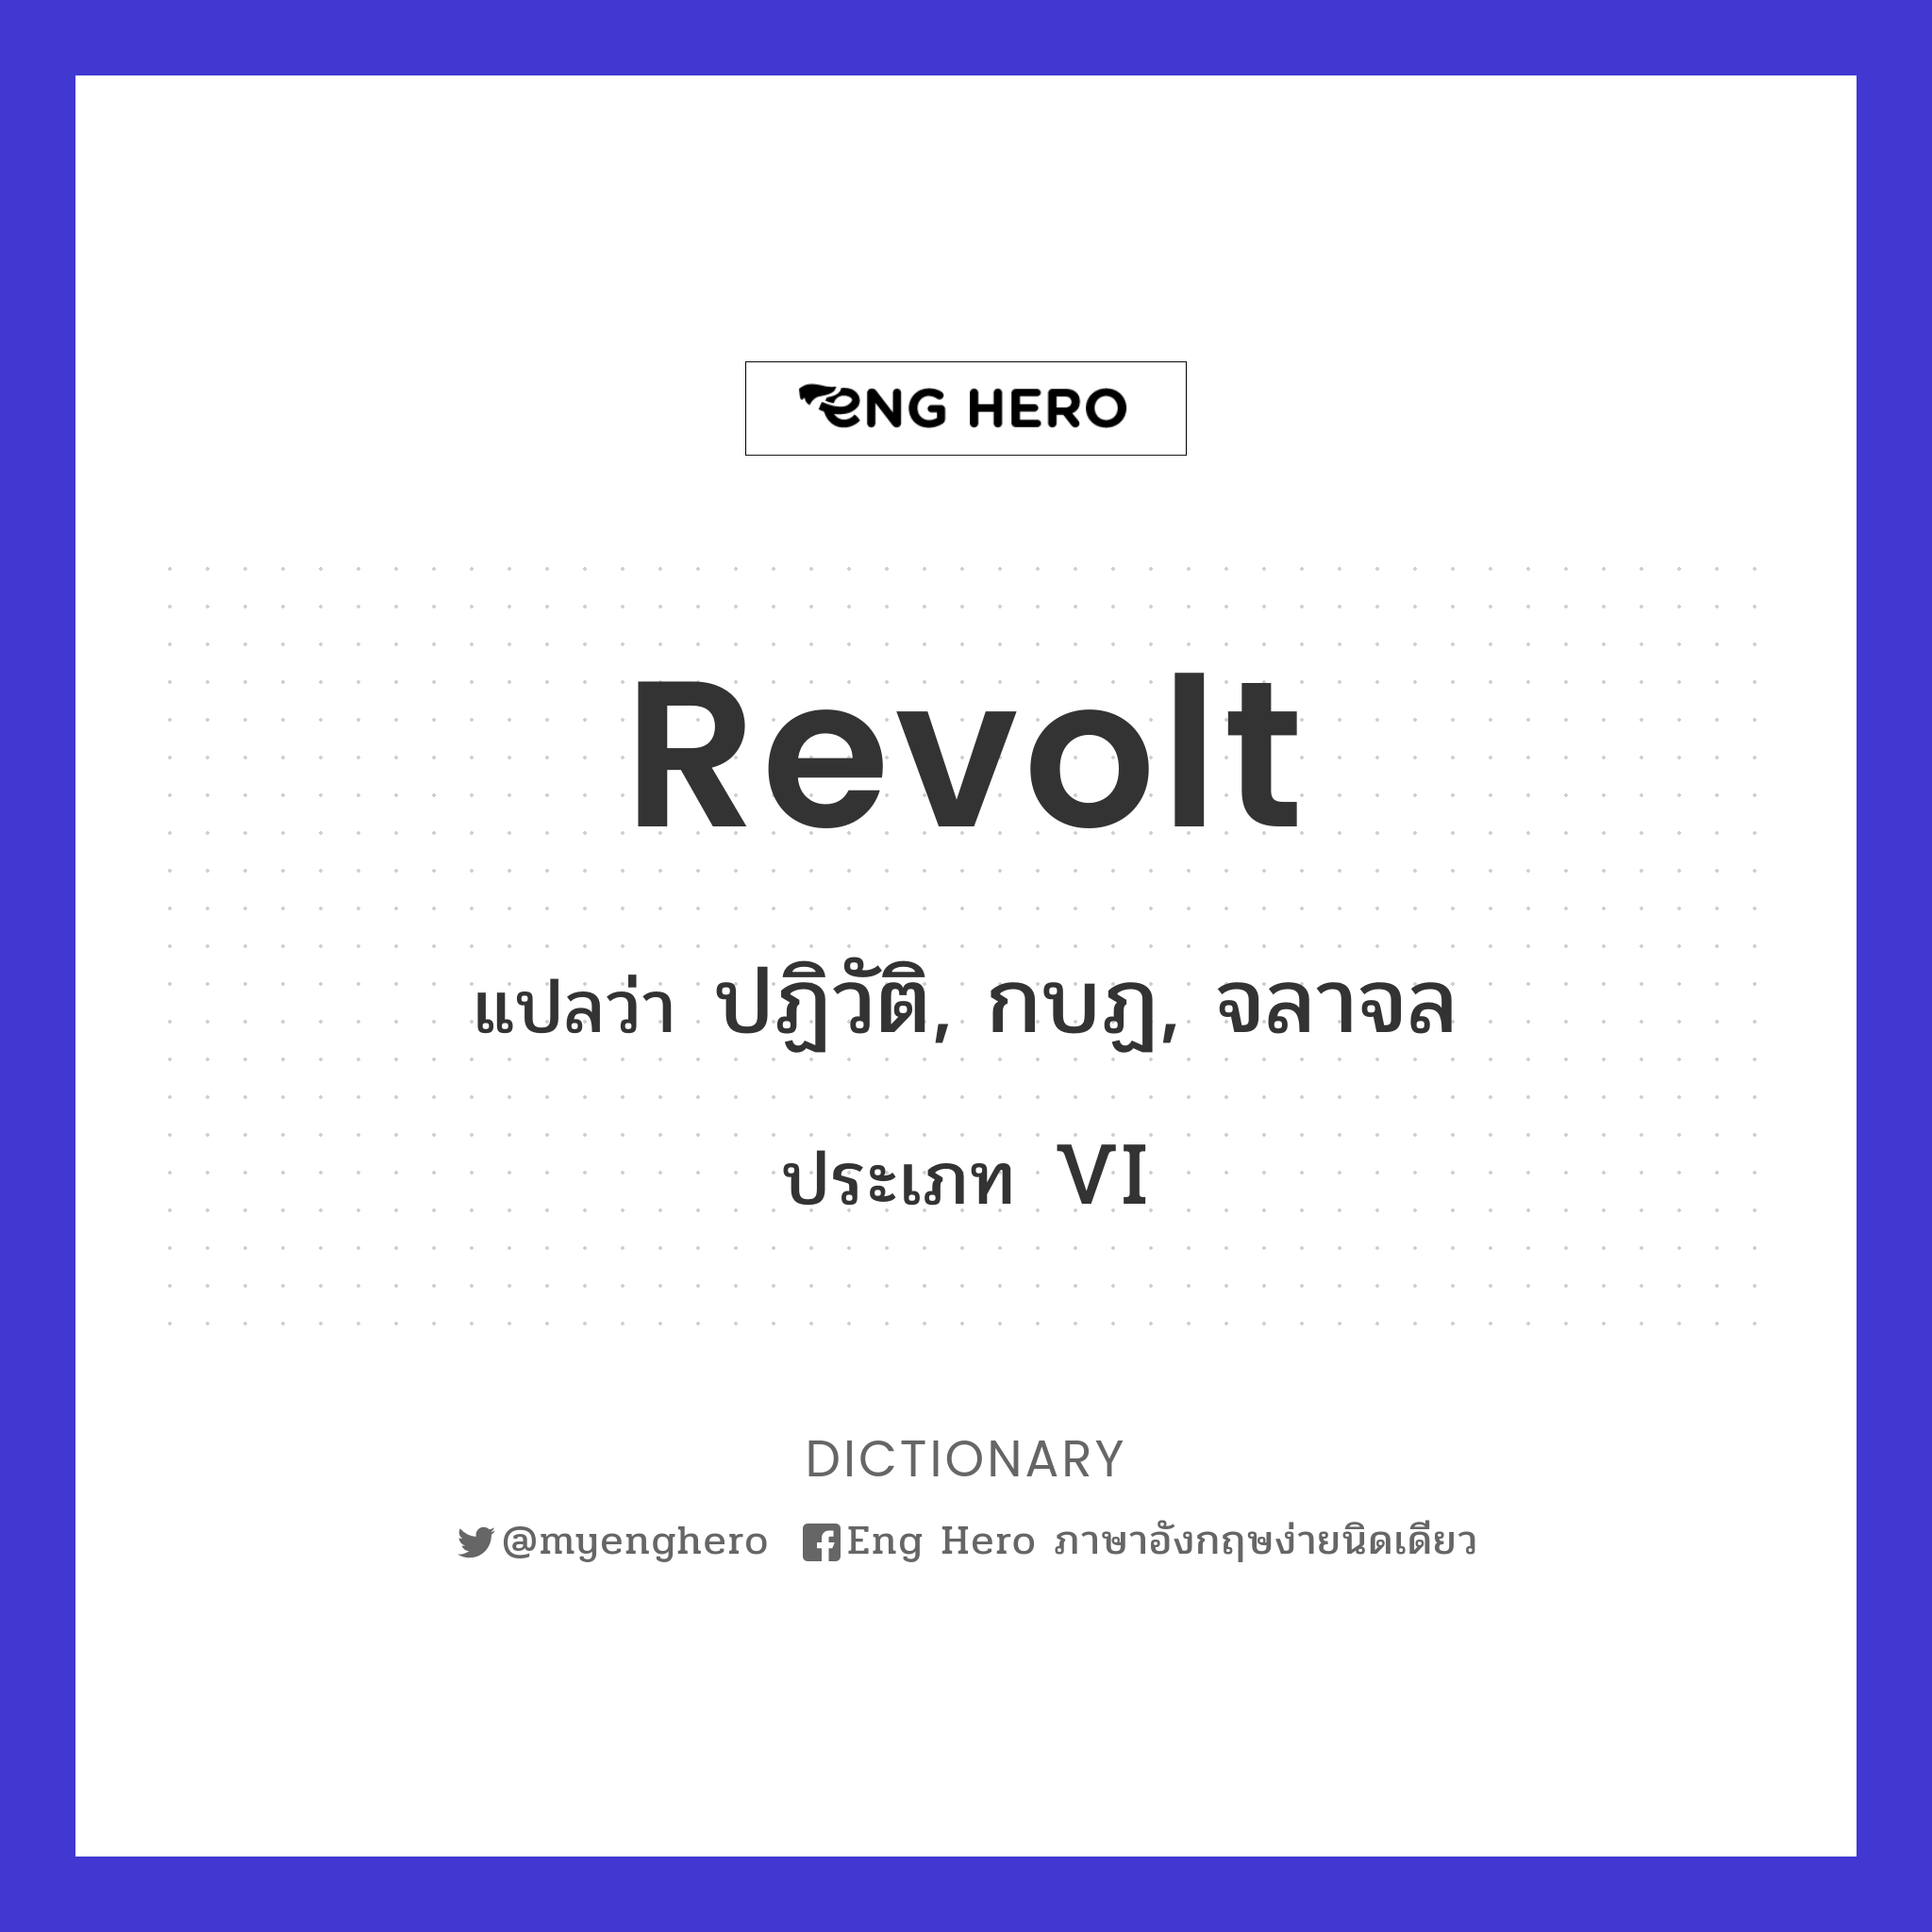 revolt